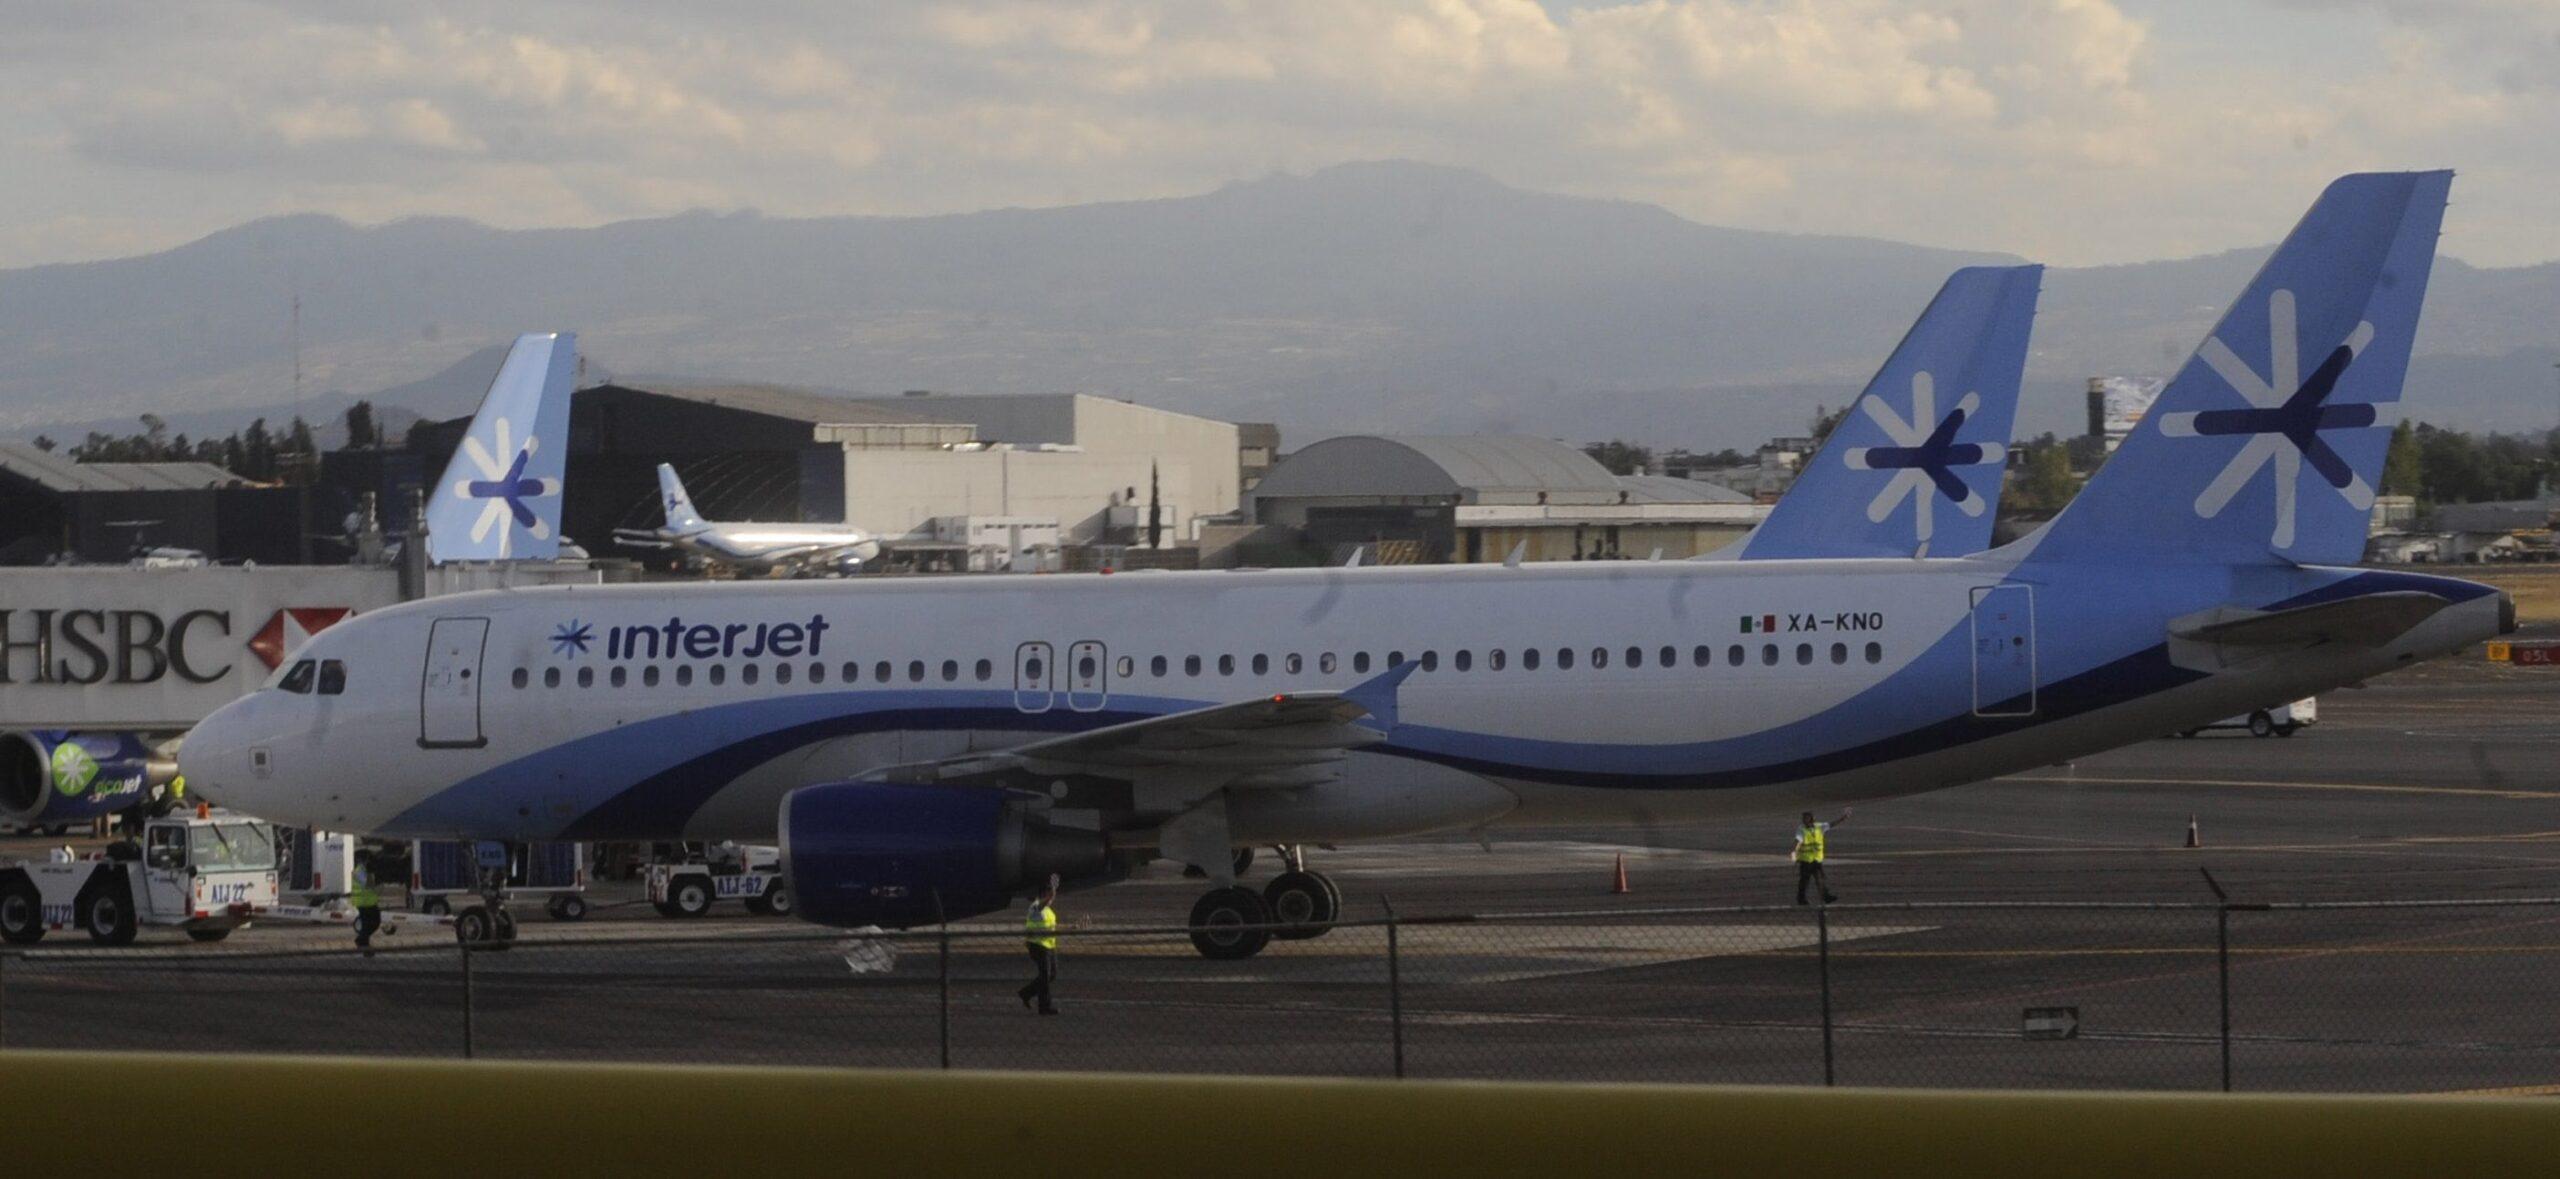 Interjet comienza a normalizar sus operaciones; hay vuelos extra para destinos más afectados